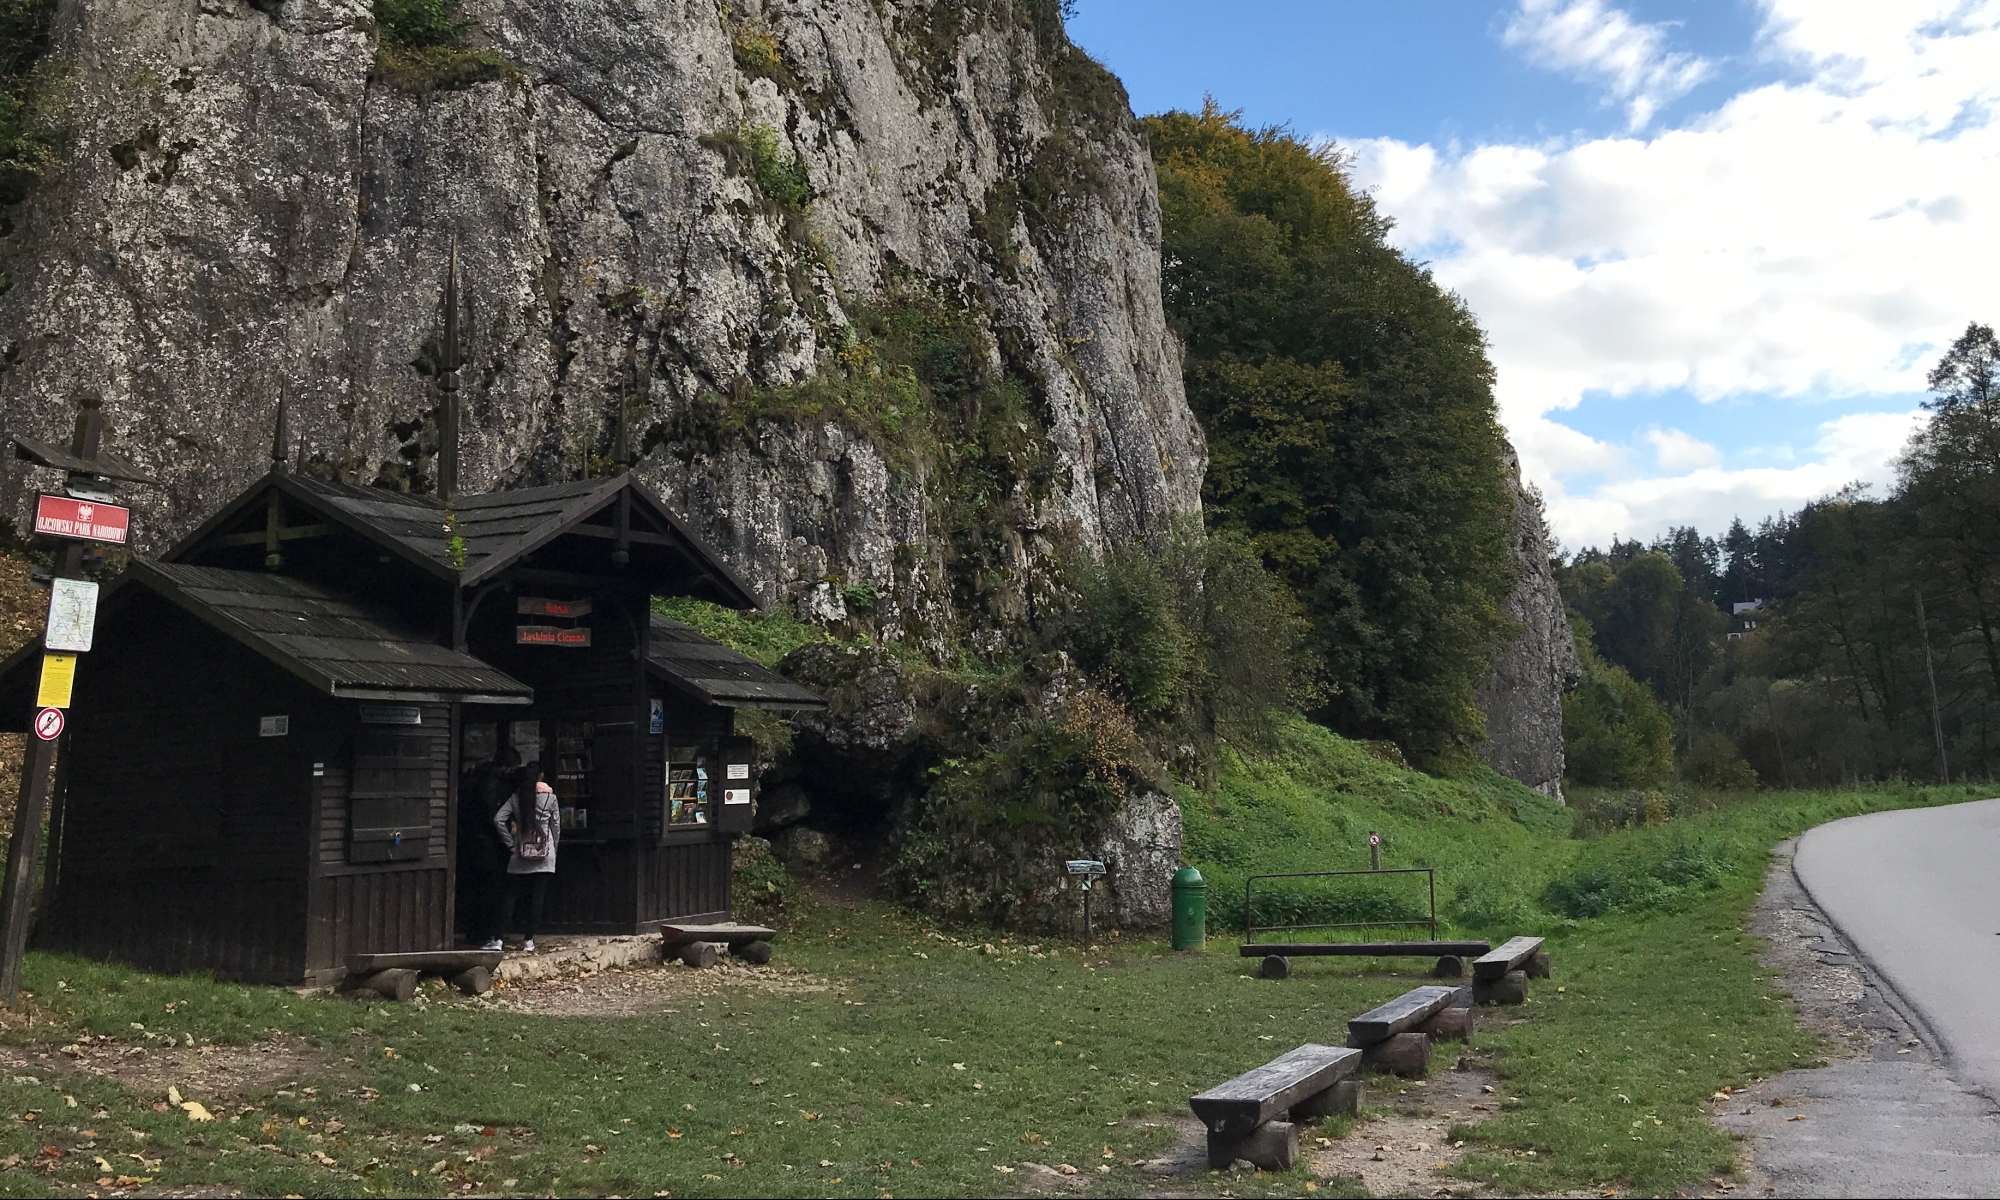 Jaskinia Ciemna - Kasa w Dolinie Prądnika w Ojcowskim Parku Narodowym